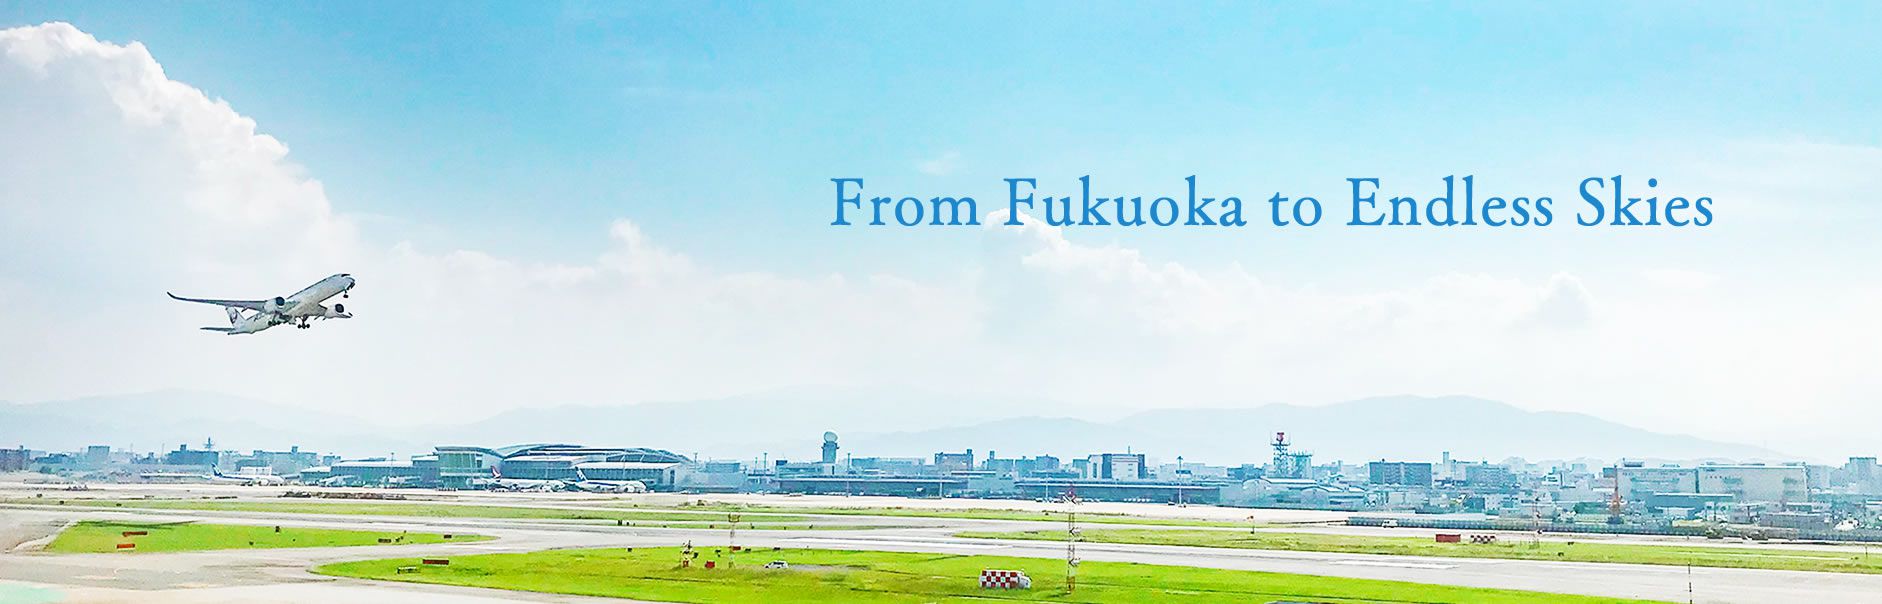 From Fukuoka to Endless Skies